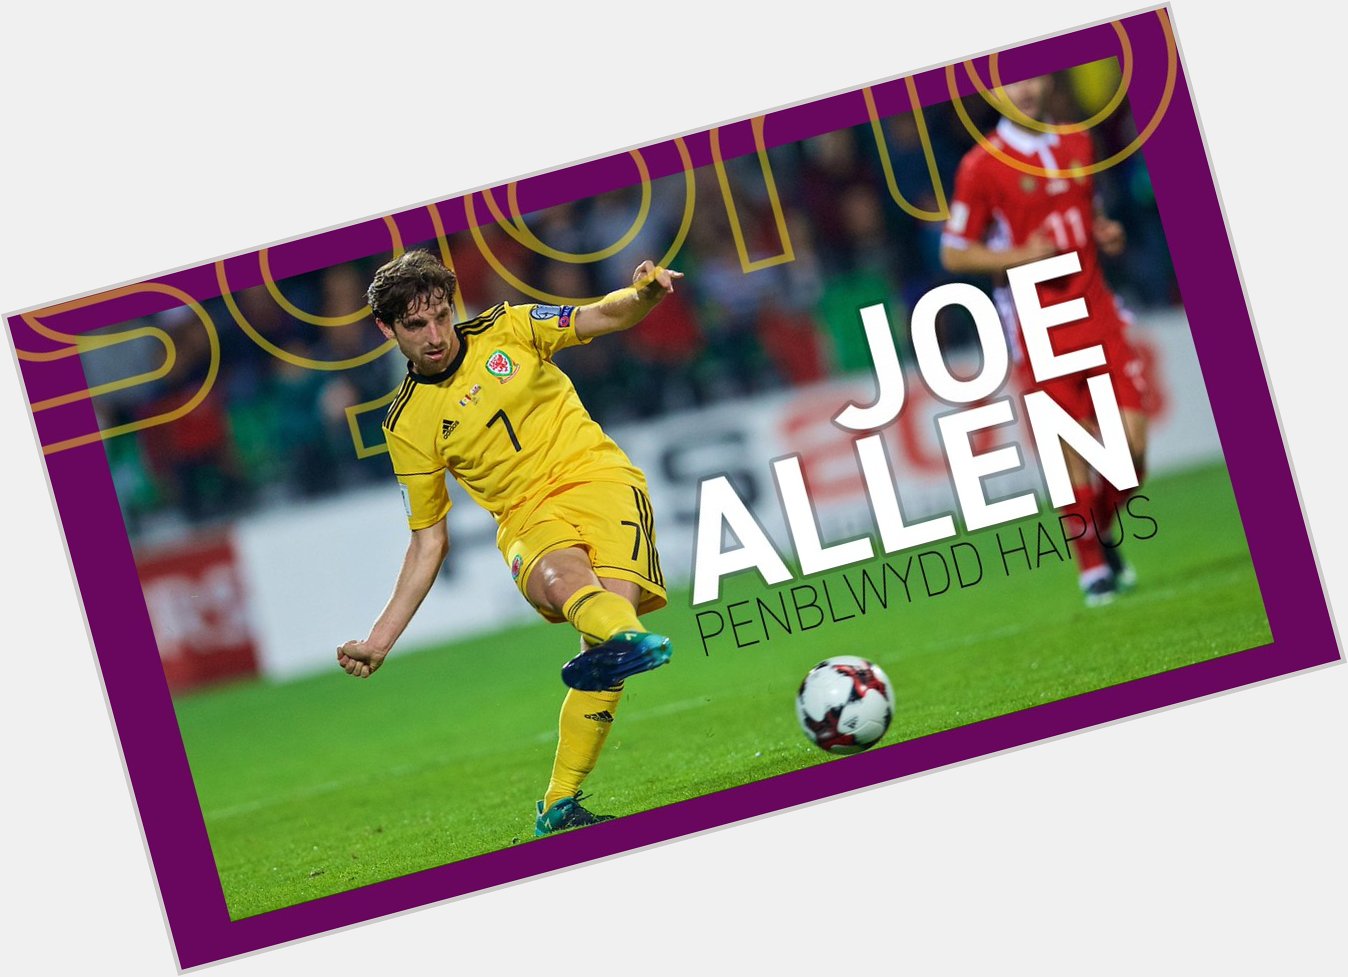  | JOE ALLEN

Penblwydd hapus yn 2 8 , Joe! | Happy 28th birthday to Joe Allen! 